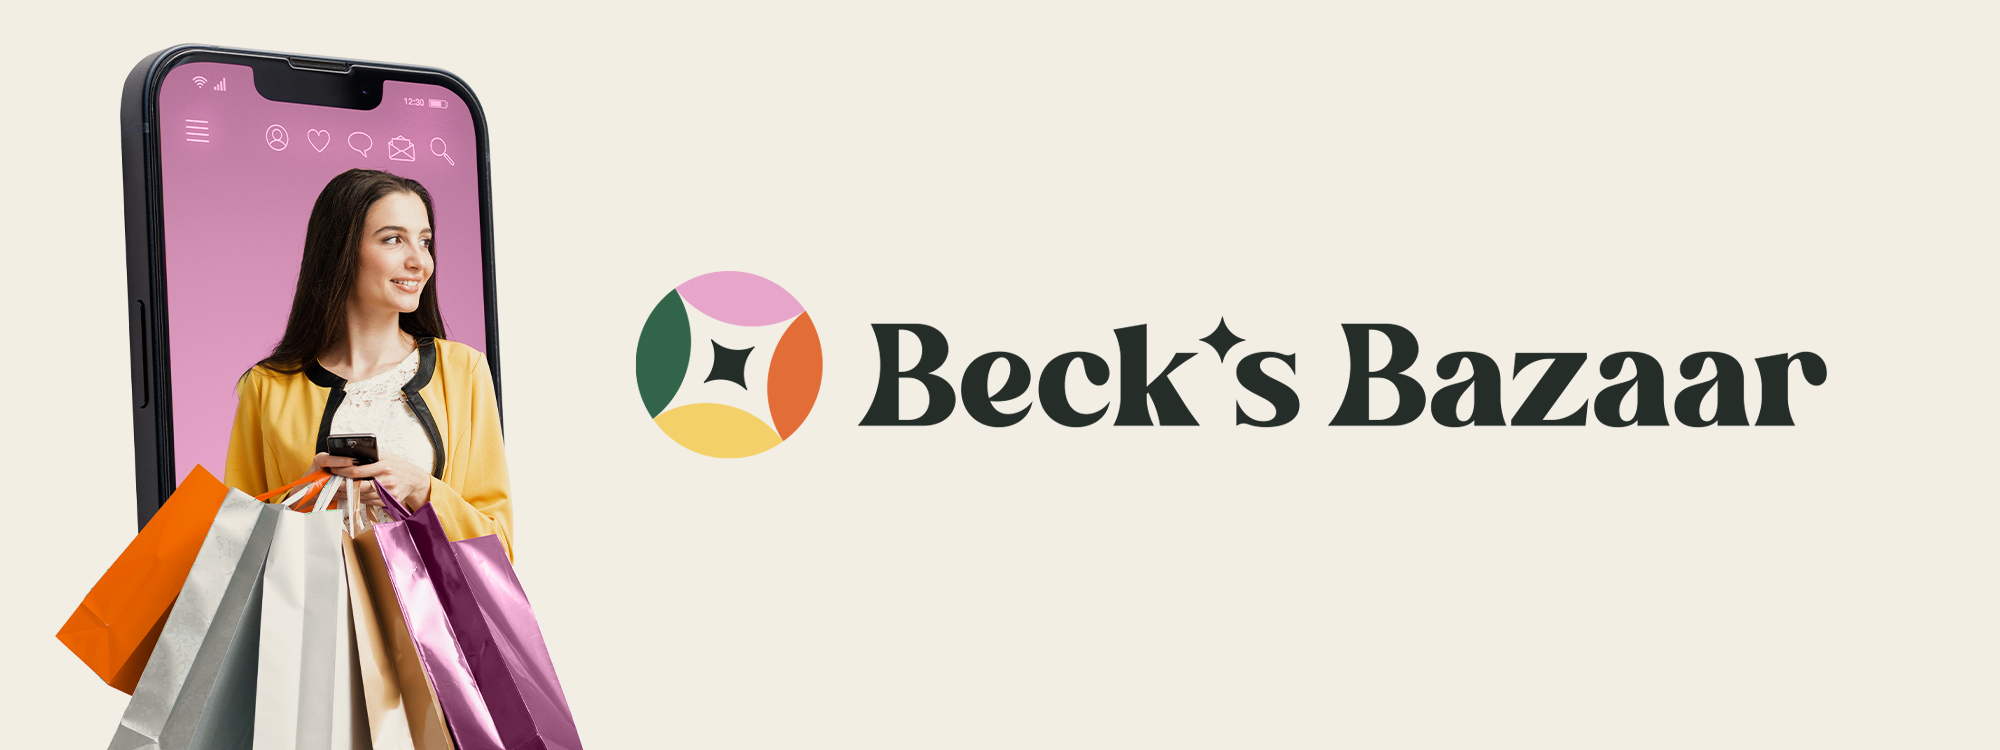 Beck's Bazaar Banner 1